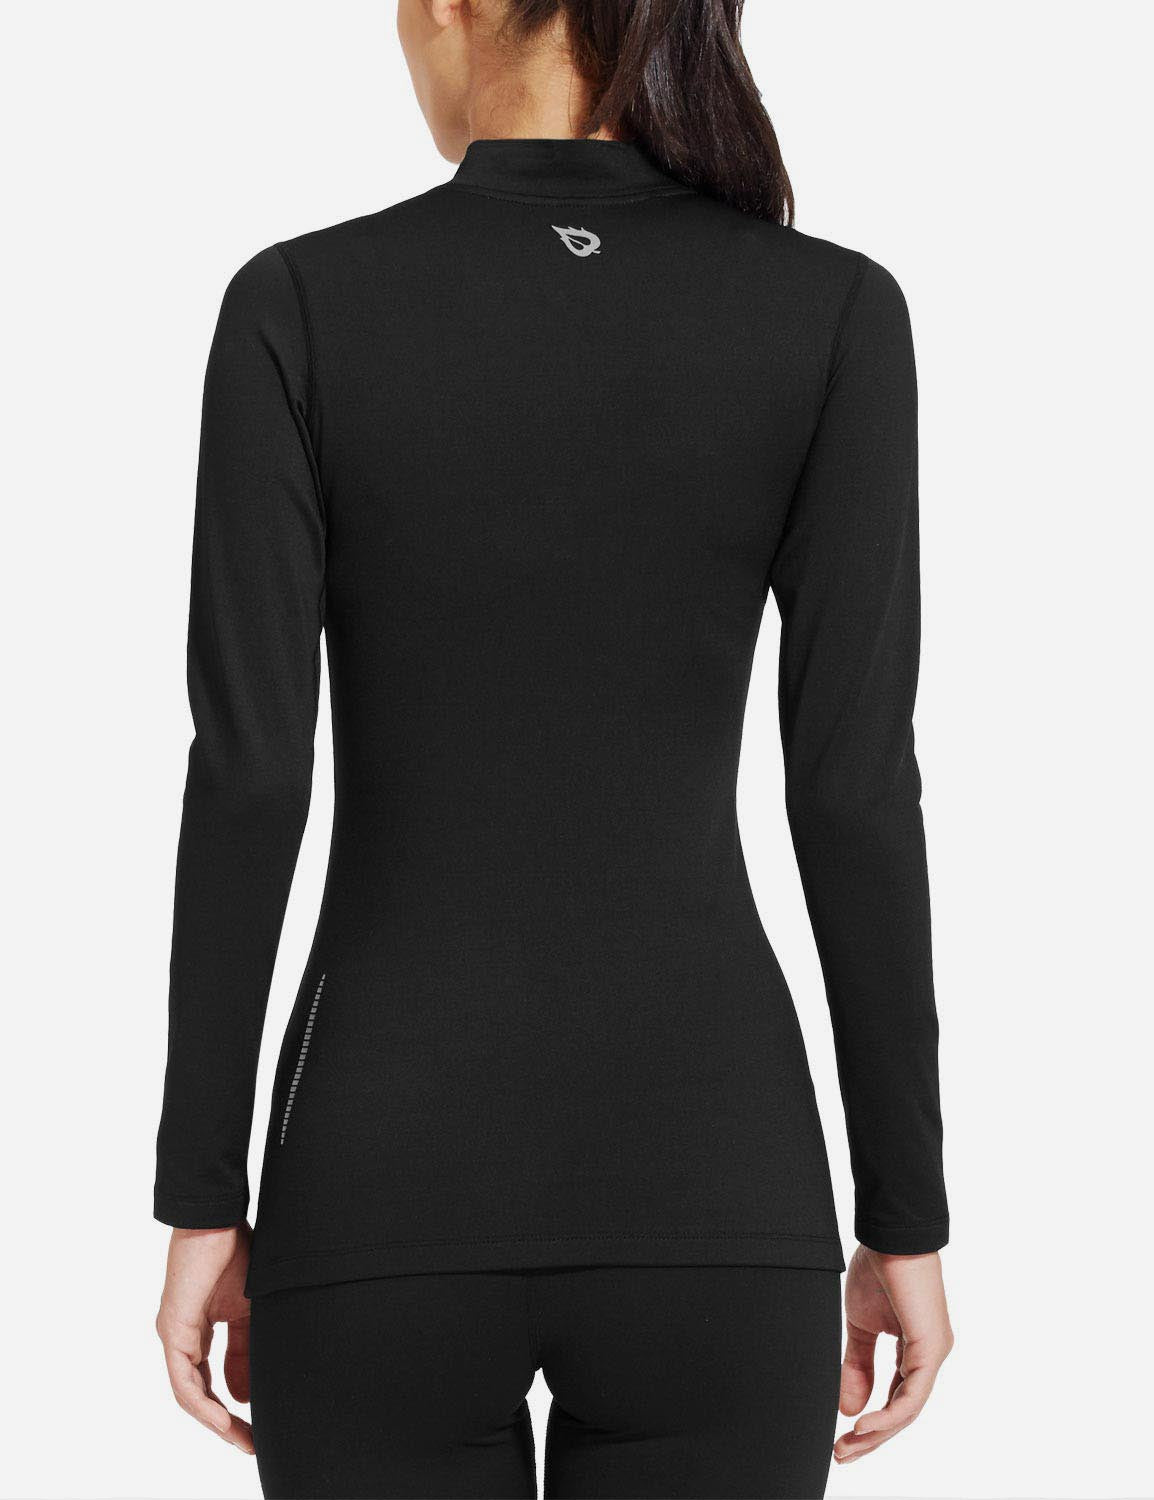 Baleaf Women's Basic Compression Mock-Neck Long Sleeved Shirt abd166 Black Back